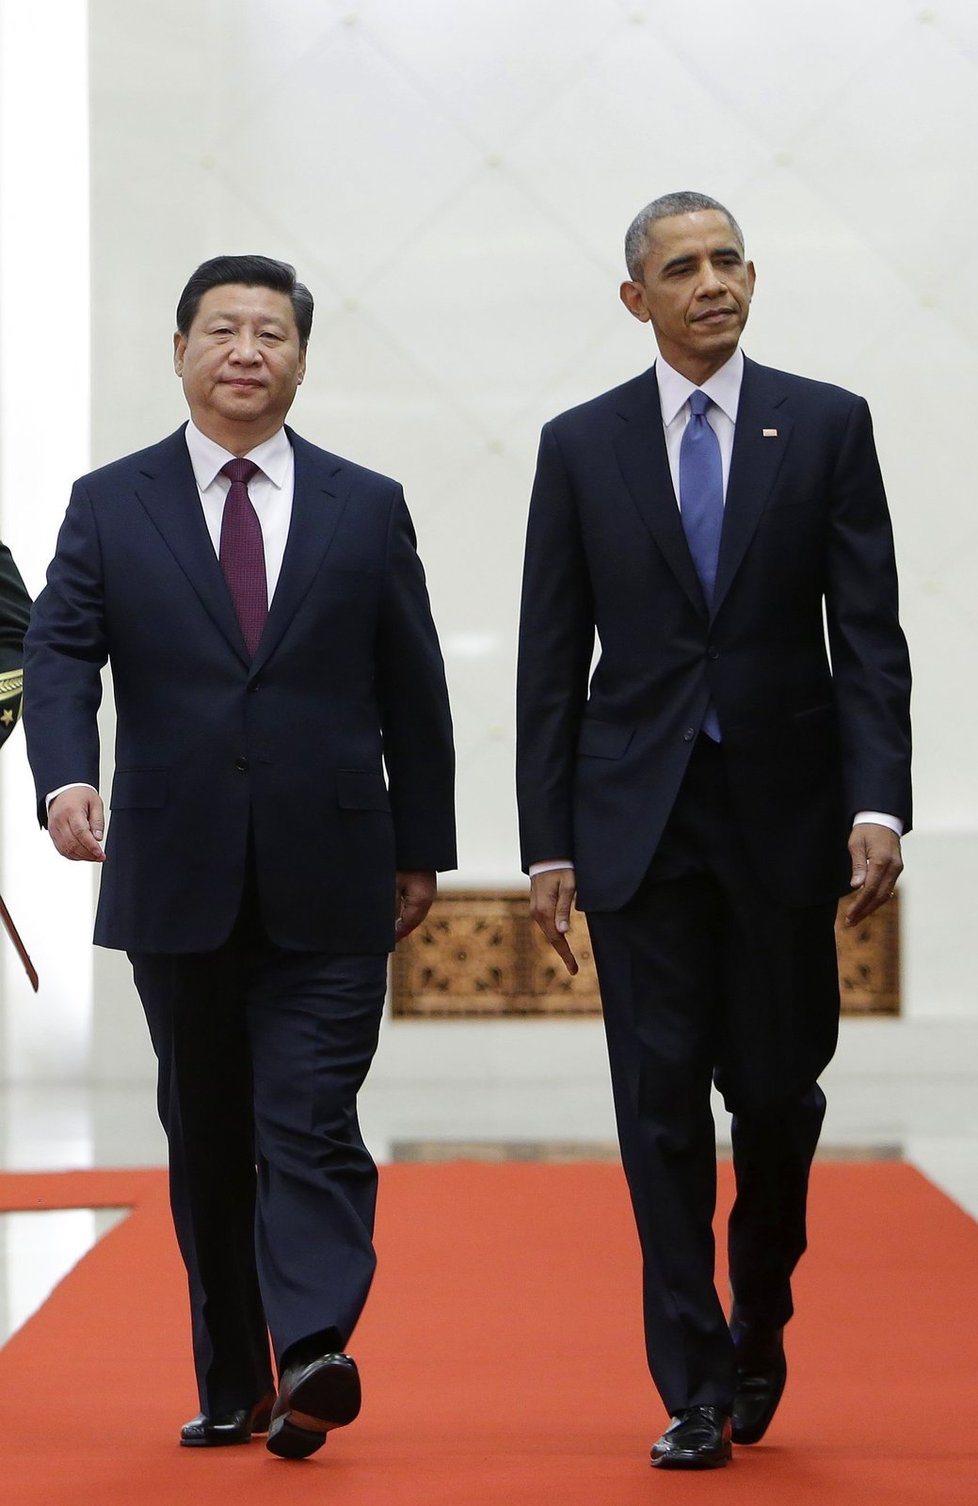 Čínský prezident Si Ťin-pching se setkal se svým americkým protějškem Barackem Obamou